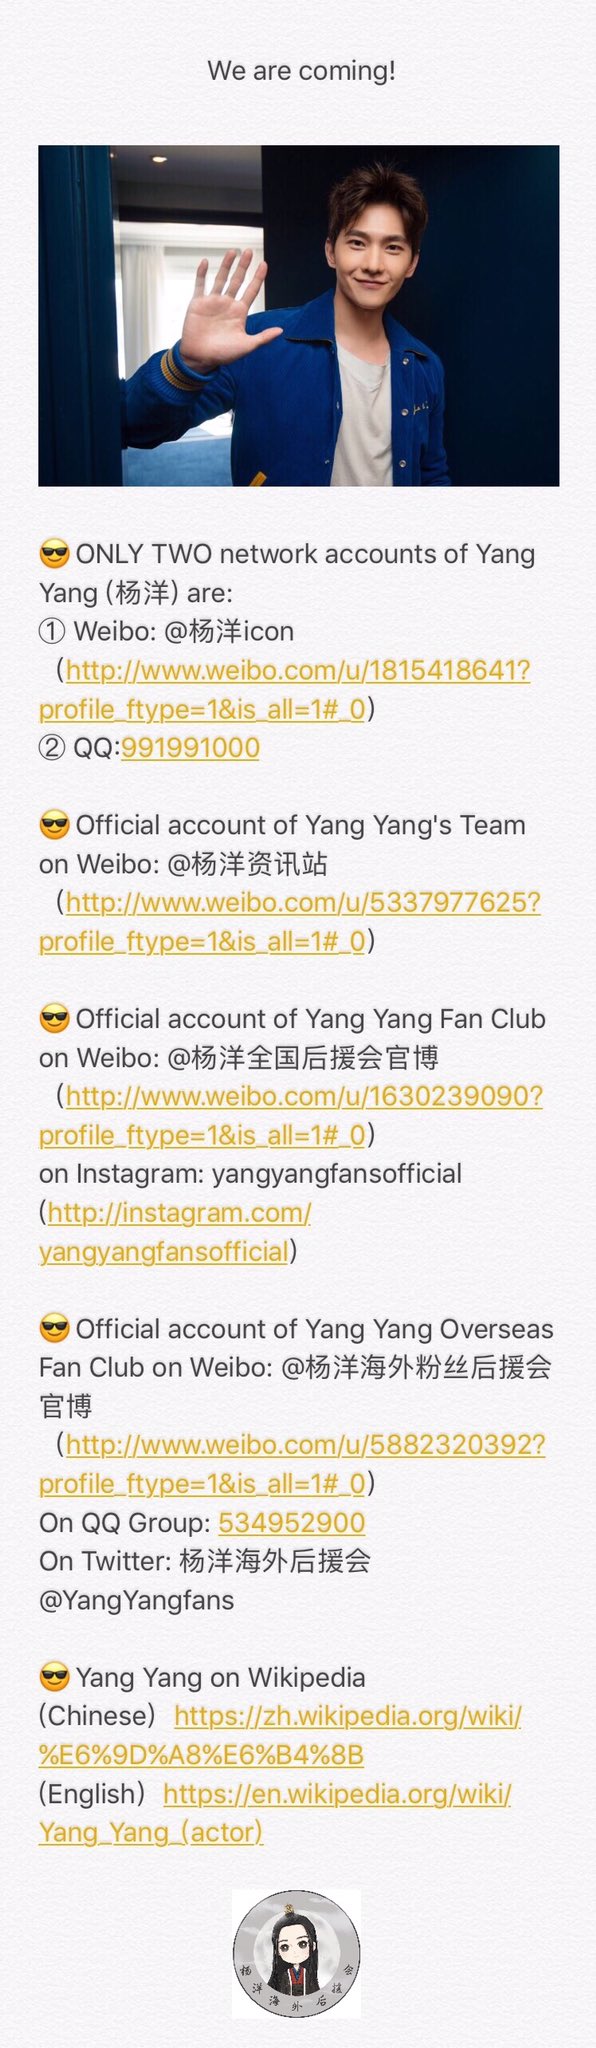 Yang Yang Overseas Fan Club 杨洋海外后援会官页